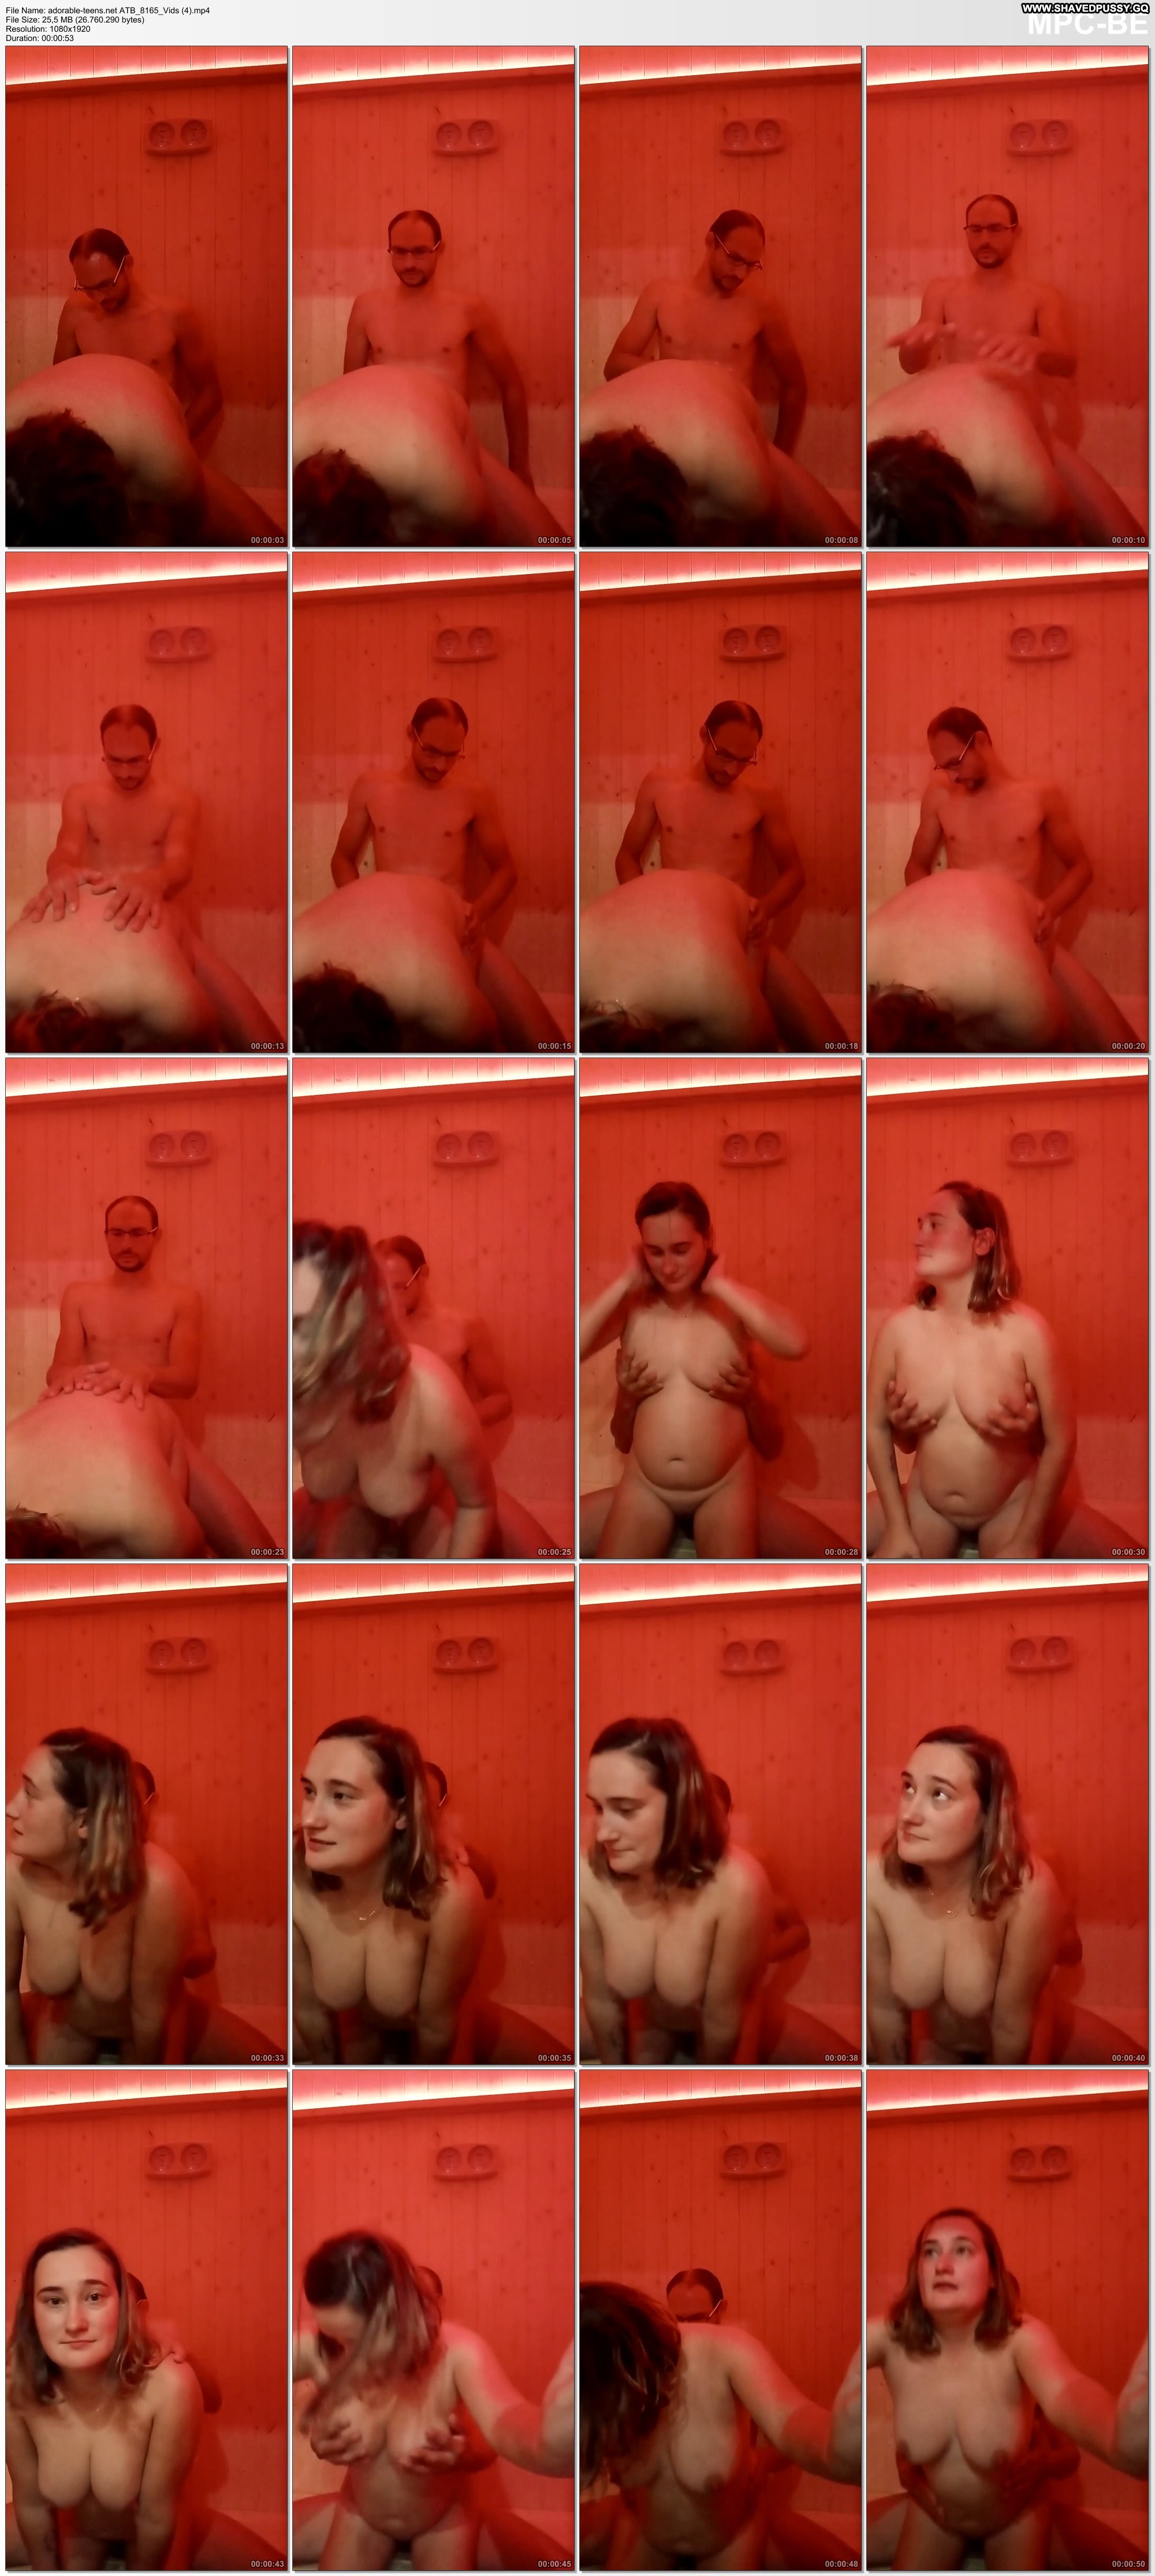 Corrina Videos Couple Sex Amateur Porn Matureamateur Porn Chubby pic pic